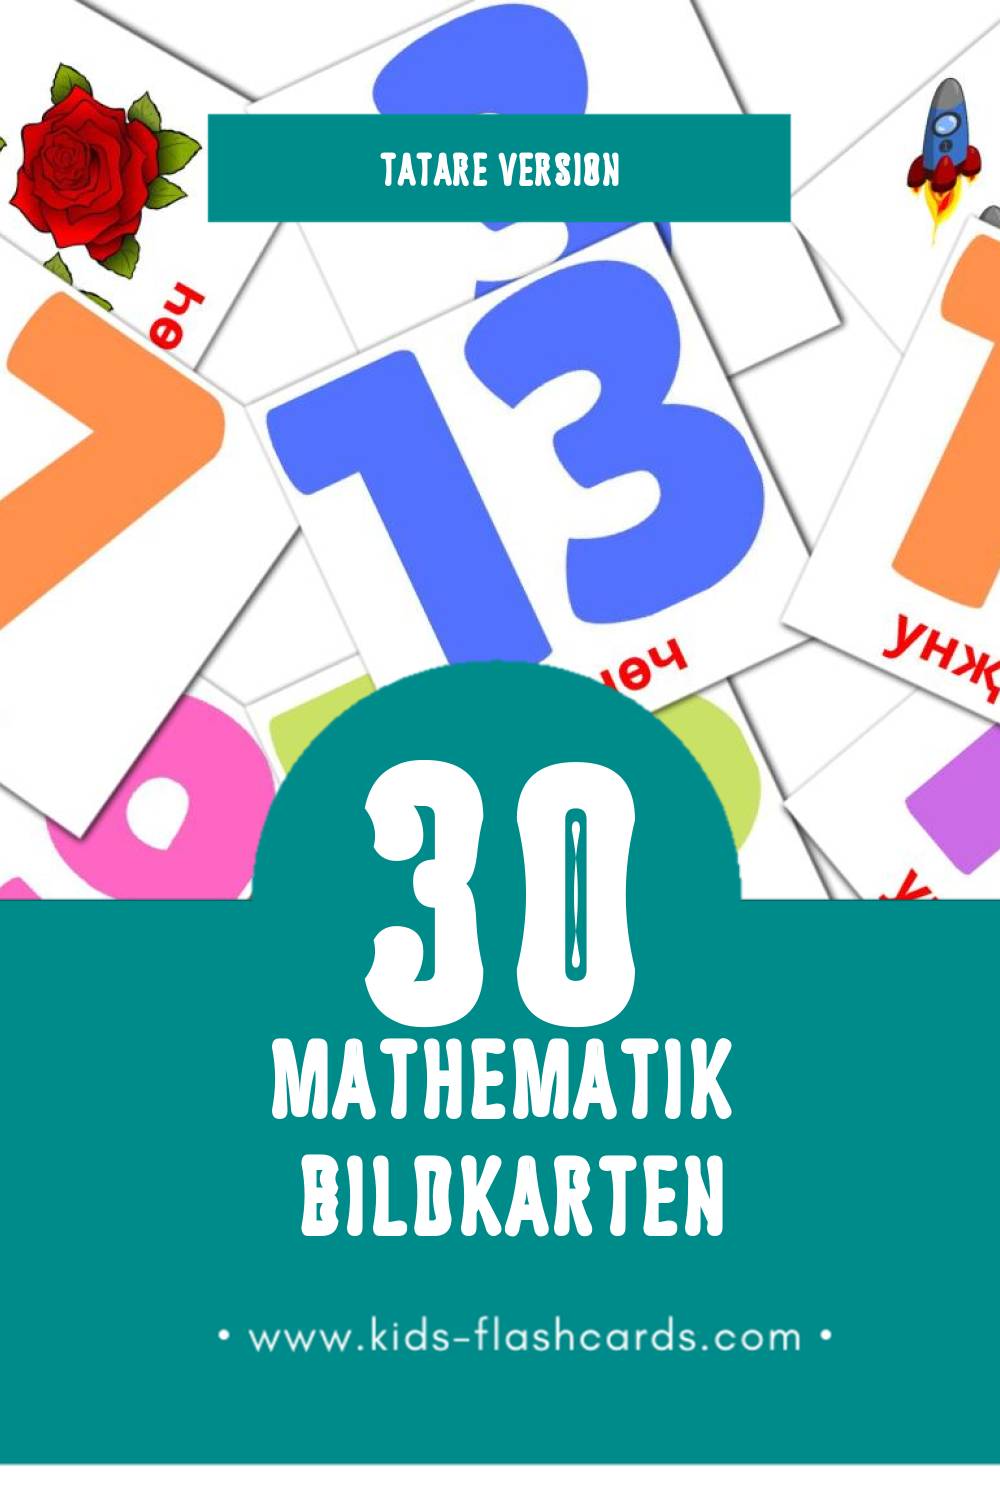 Visual Математика Flashcards für Kleinkinder (30 Karten in Tatar)